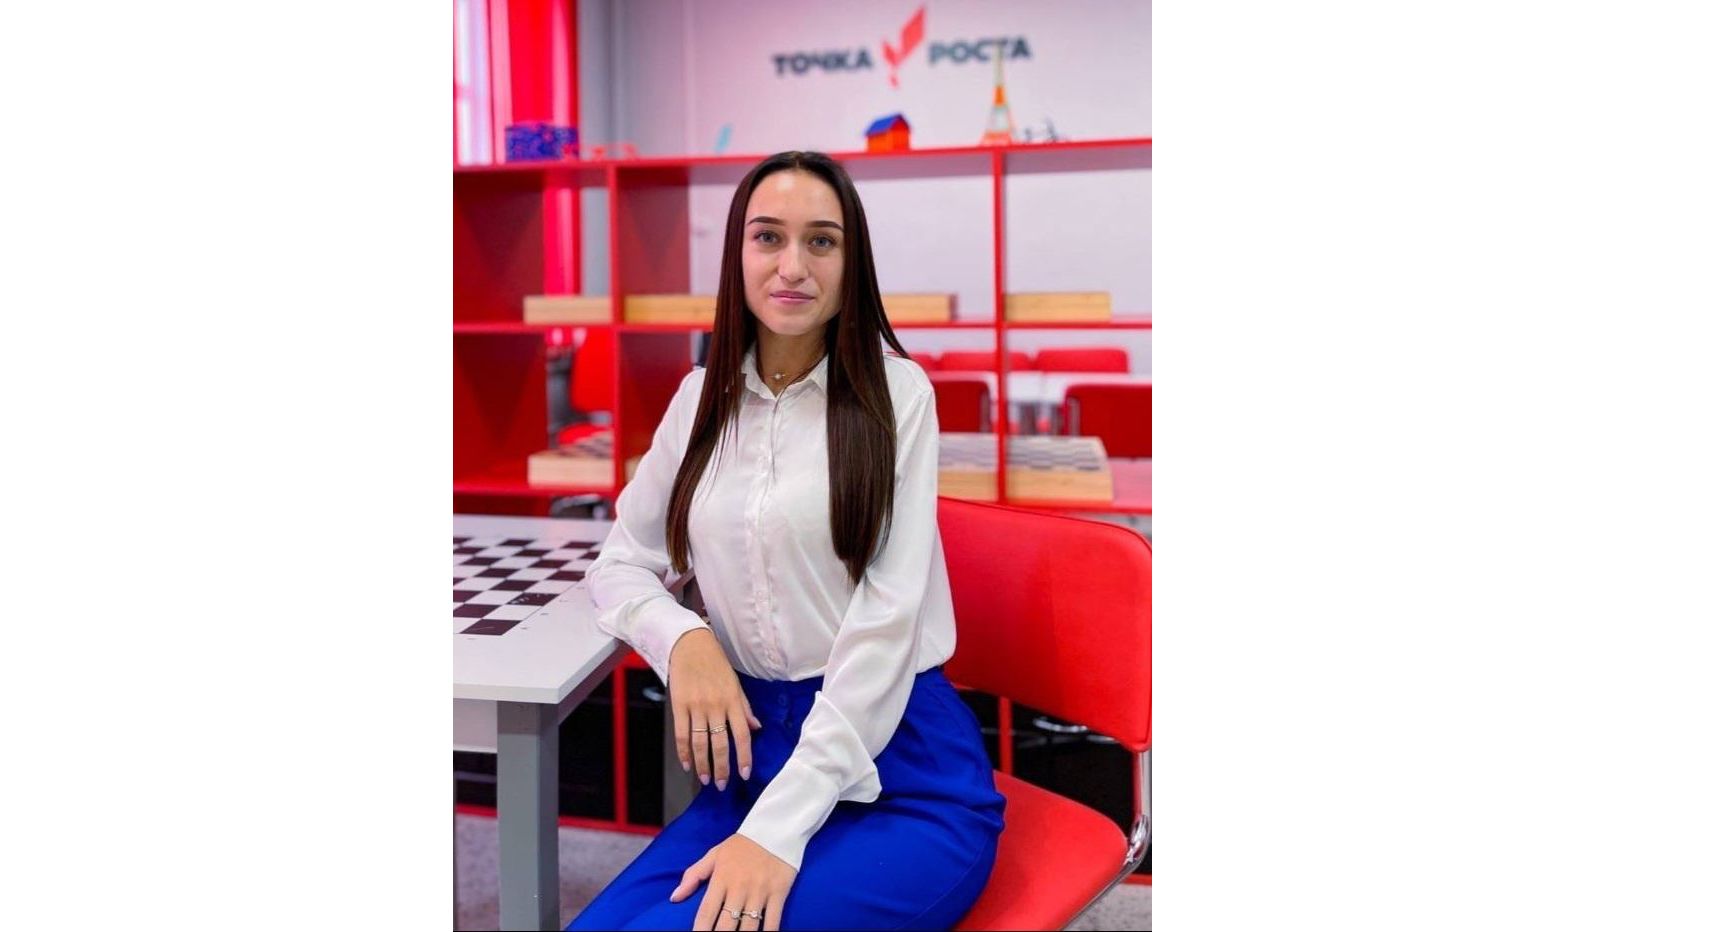 Полина Тадевосян из Данилова признана одним из лучших молодых педагогов России